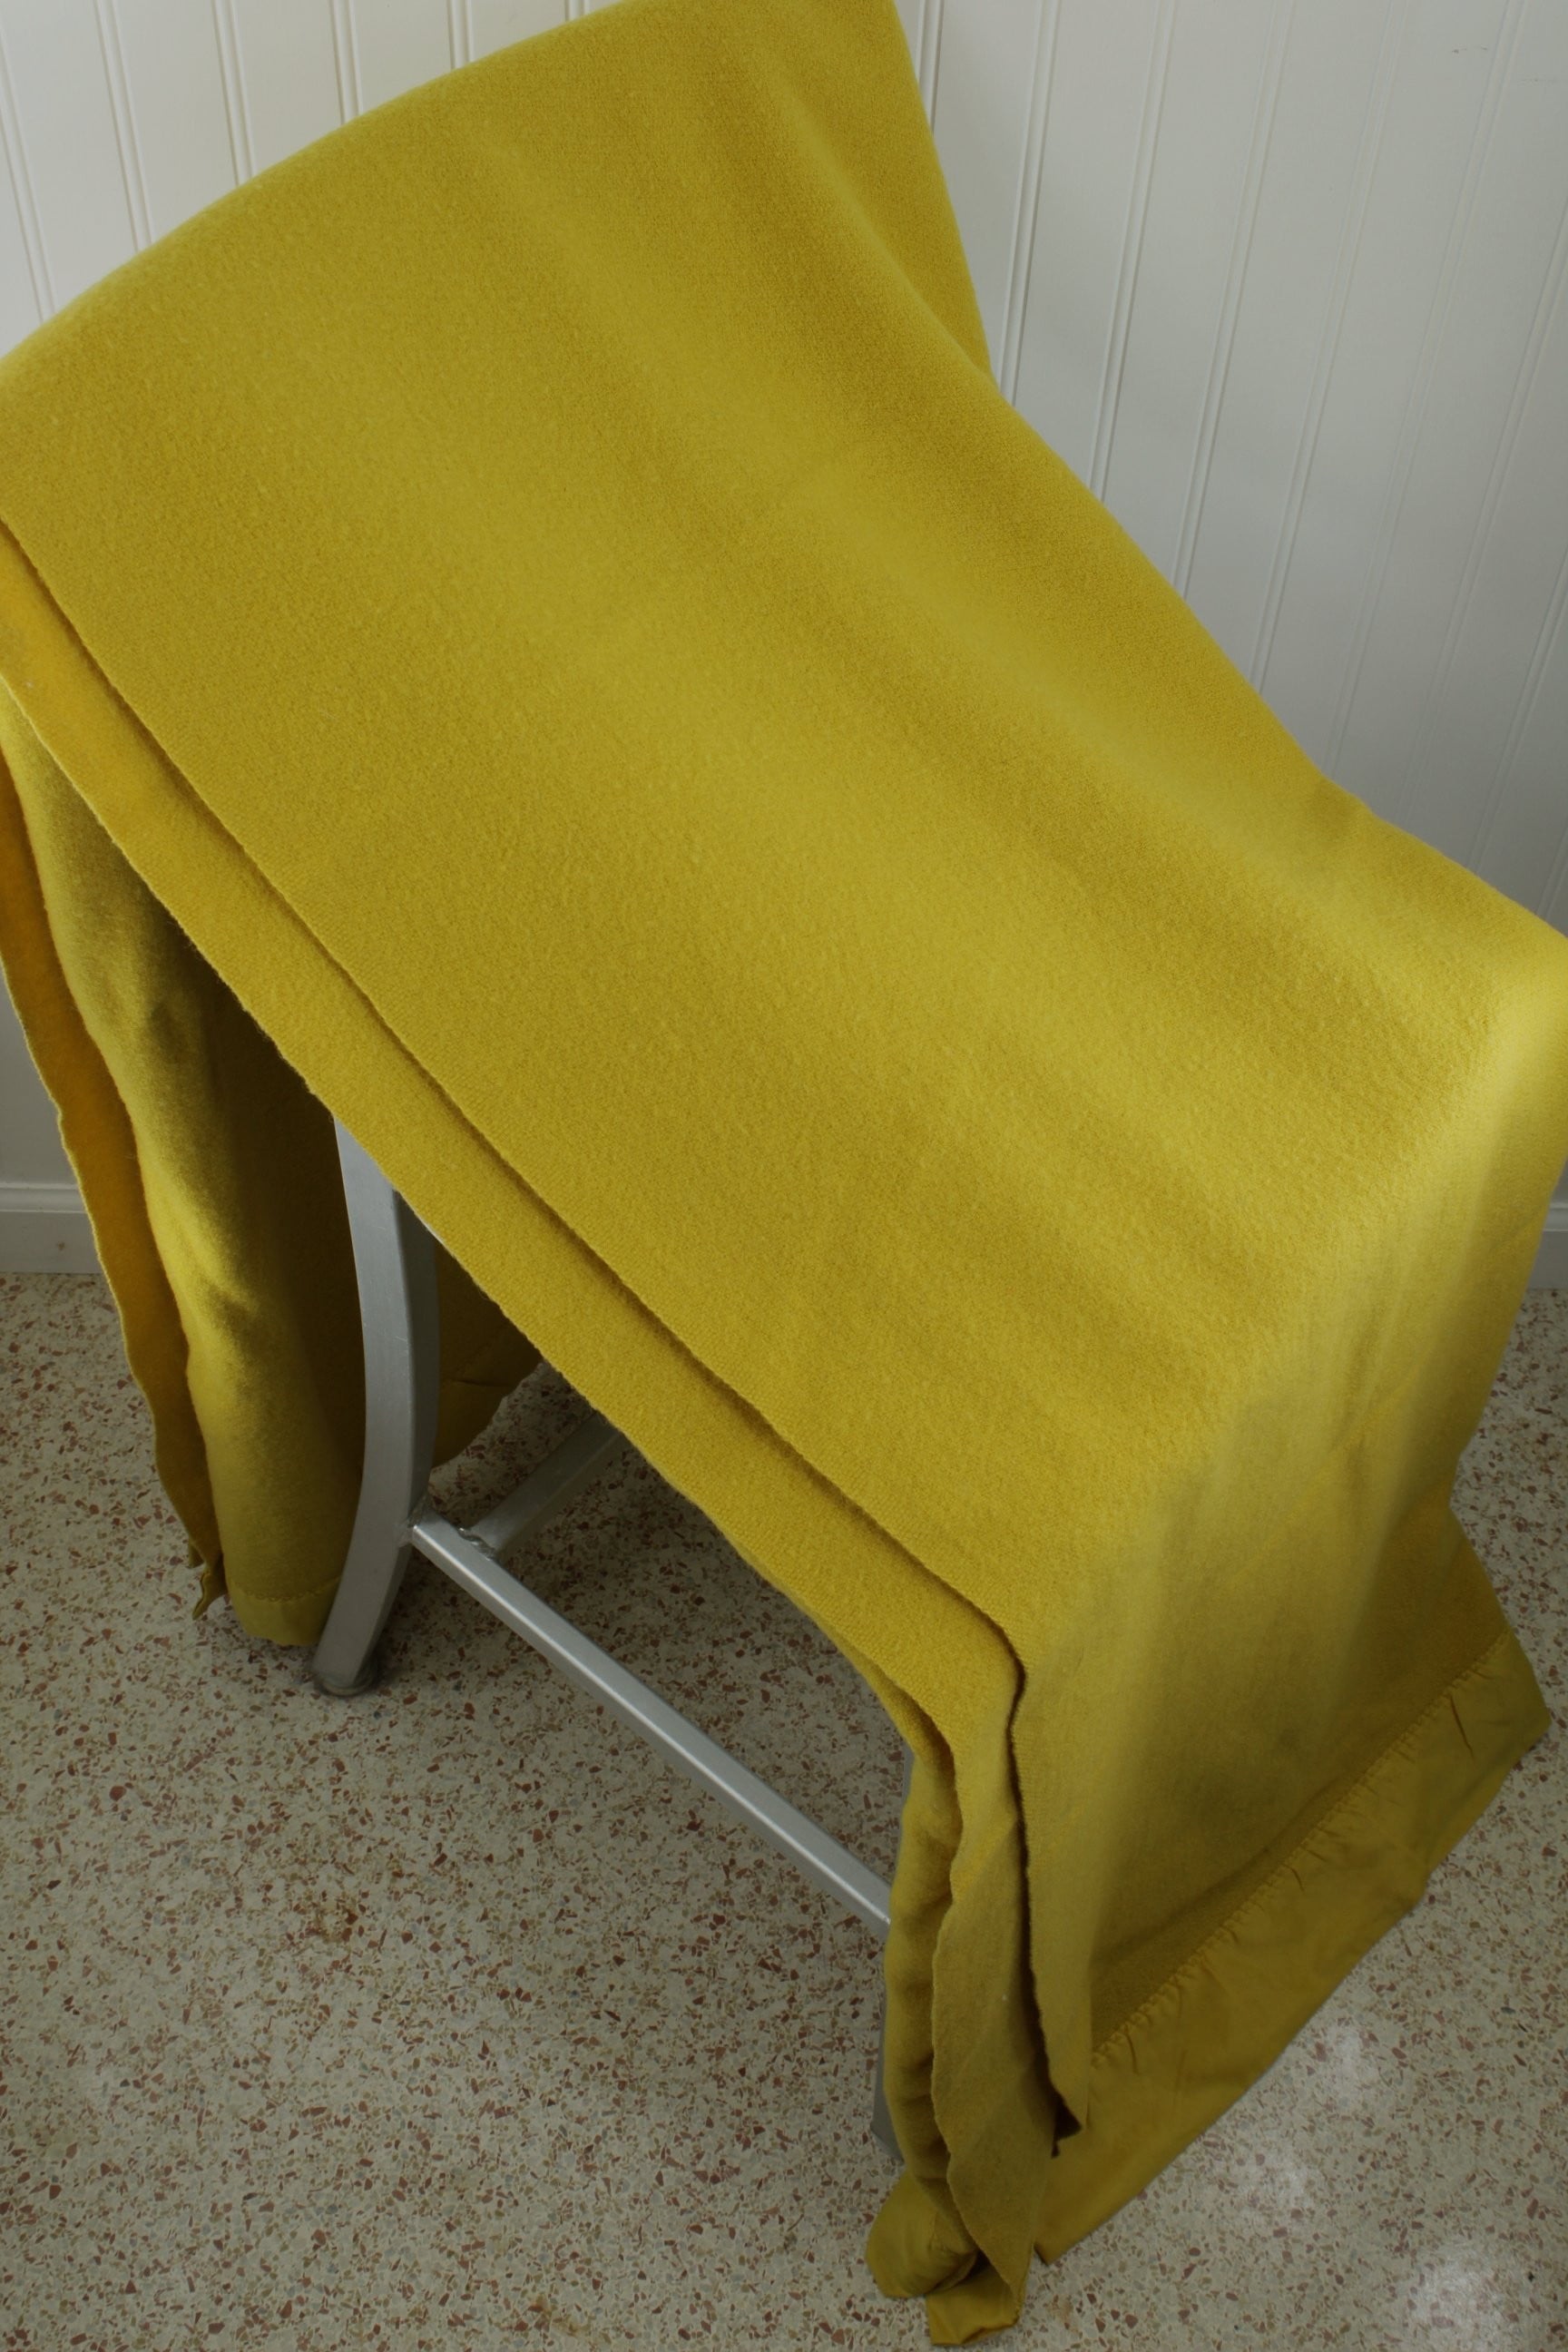 Faribo 100% Wool Blanket Dijon Mustard  Gold Vintage 82" X 84" Wide Satin Binding 3" king